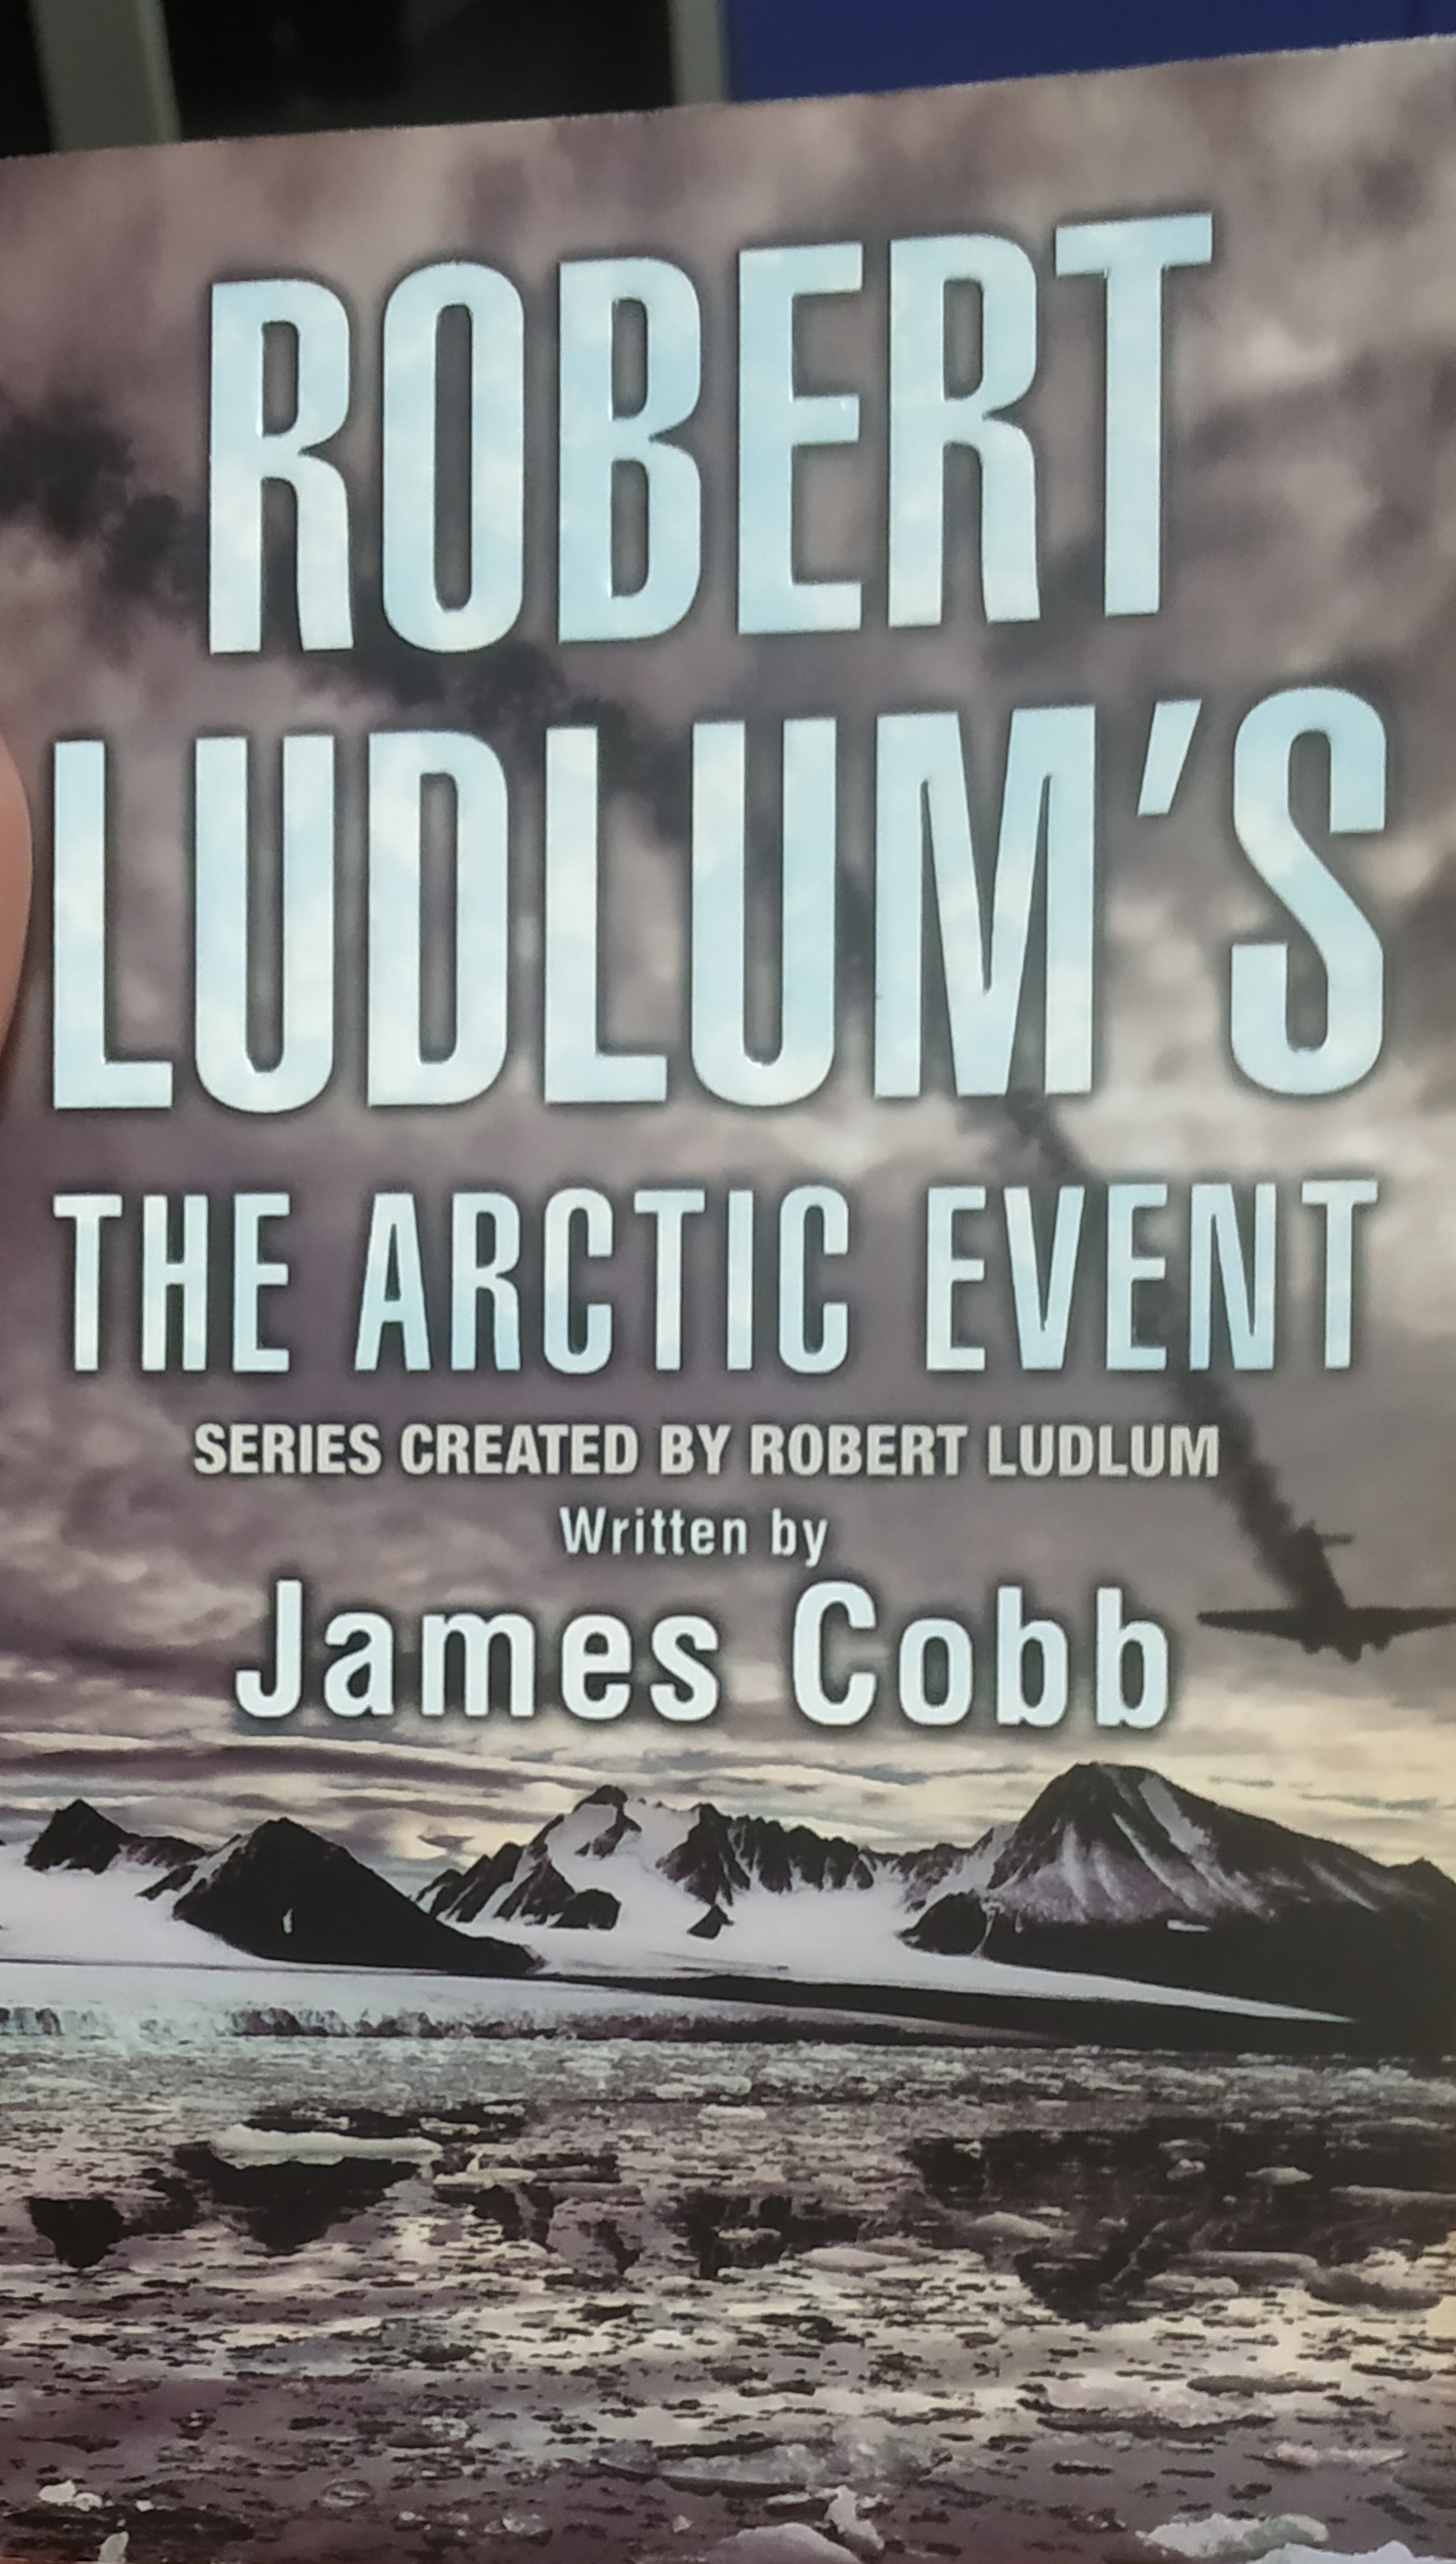 James Cobb written The Arctic Event: Robert Ludlum series 